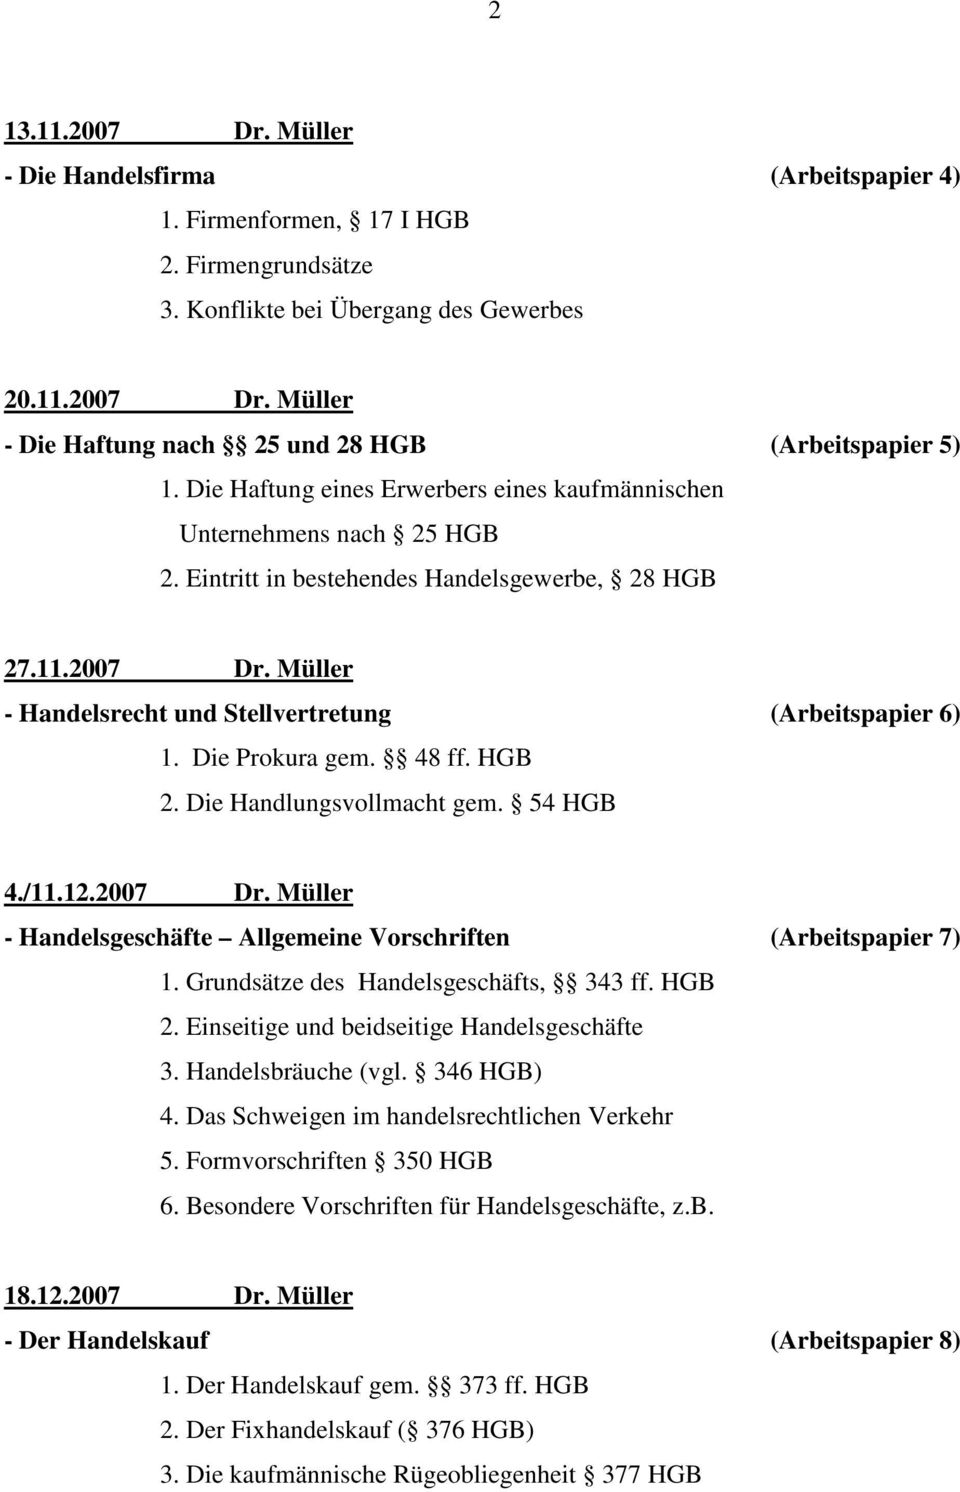 Müller - Handelsrecht und Stellvertretung (Arbeitspapier 6) 1. Die Prokura gem. 48 ff. HGB 2. Die Handlungsvollmacht gem. 54 HGB 4./11.12.2007 Dr.